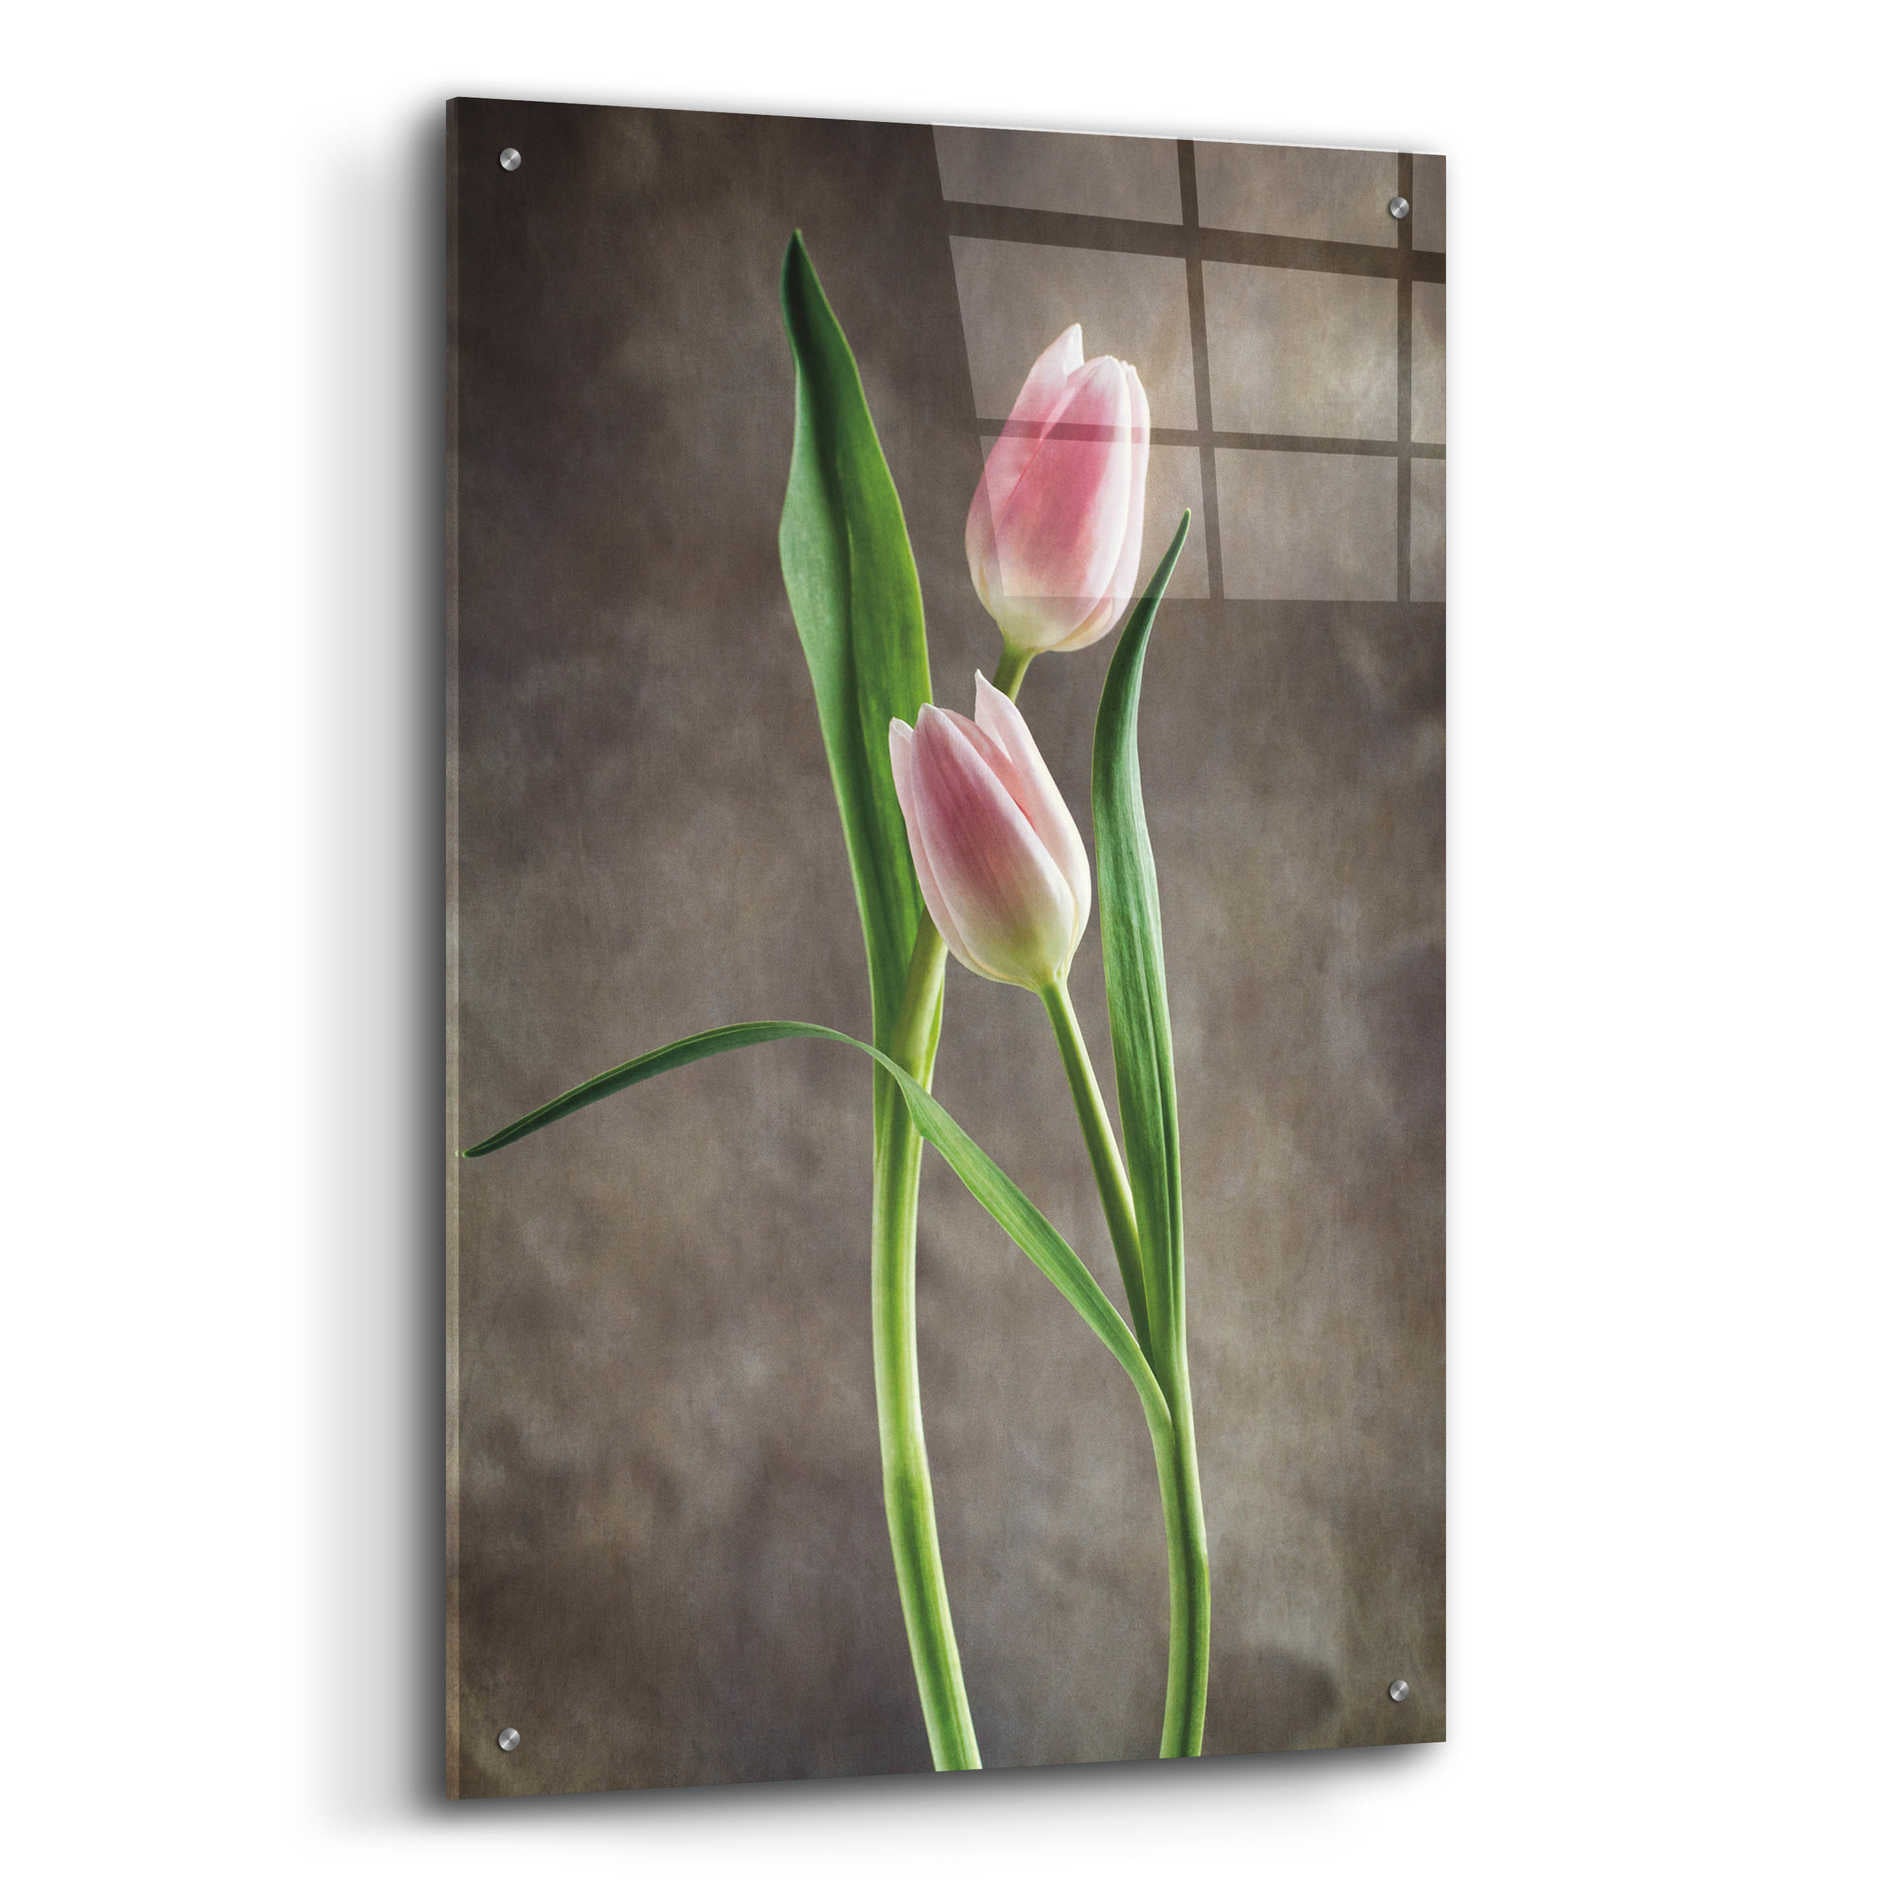 Epic Art 'Spring Tulips VI' by Debra Van Swearingen, Acrylic Glass Wall Art,24x36